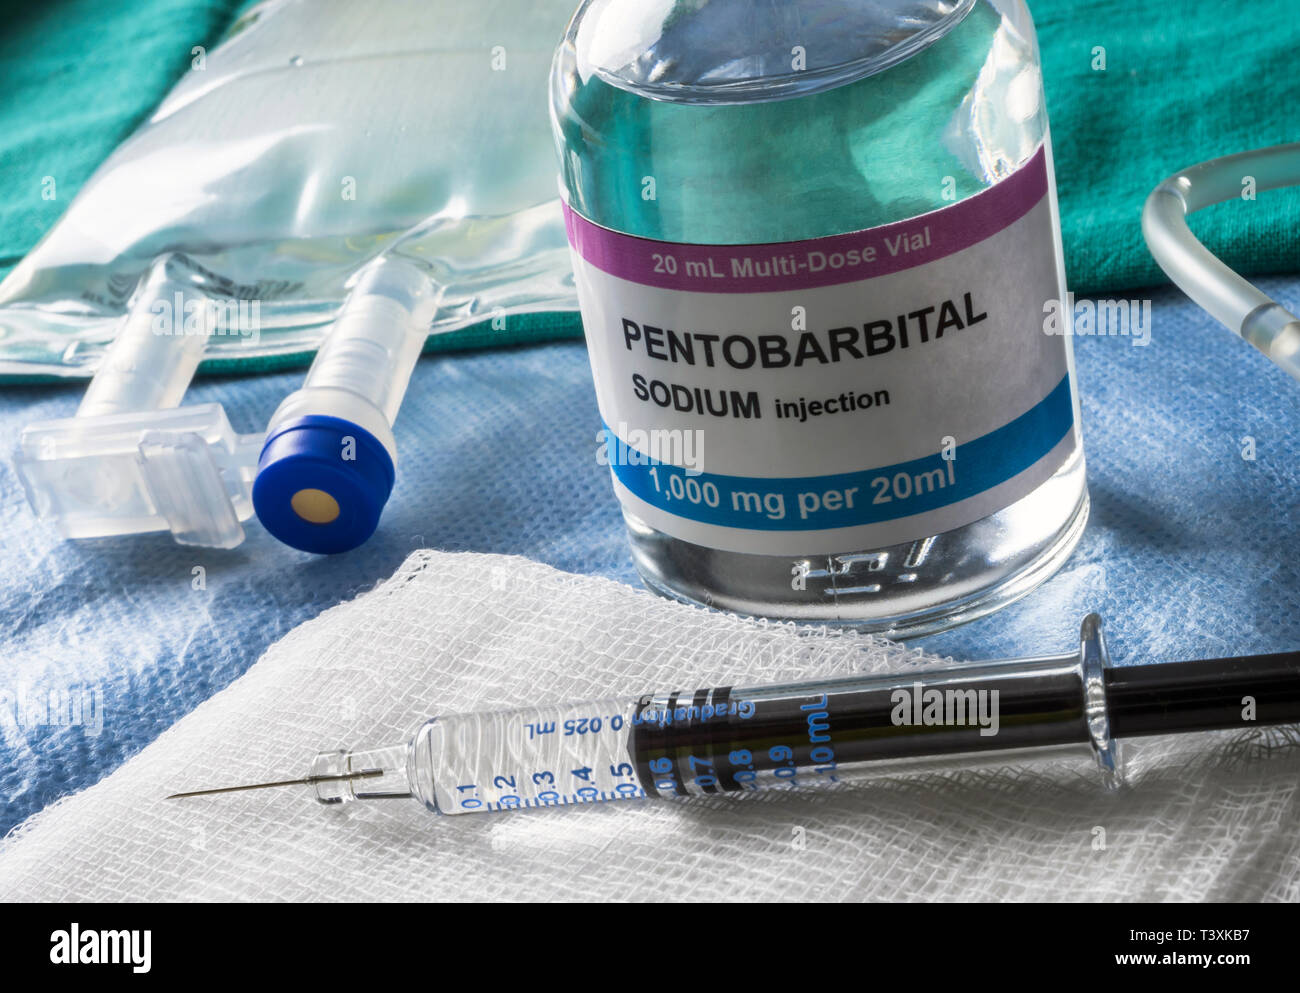 Flaconcino con pentobarbital utilizzato per eutanasia e Inyecion letali in un ospedale Foto Stock